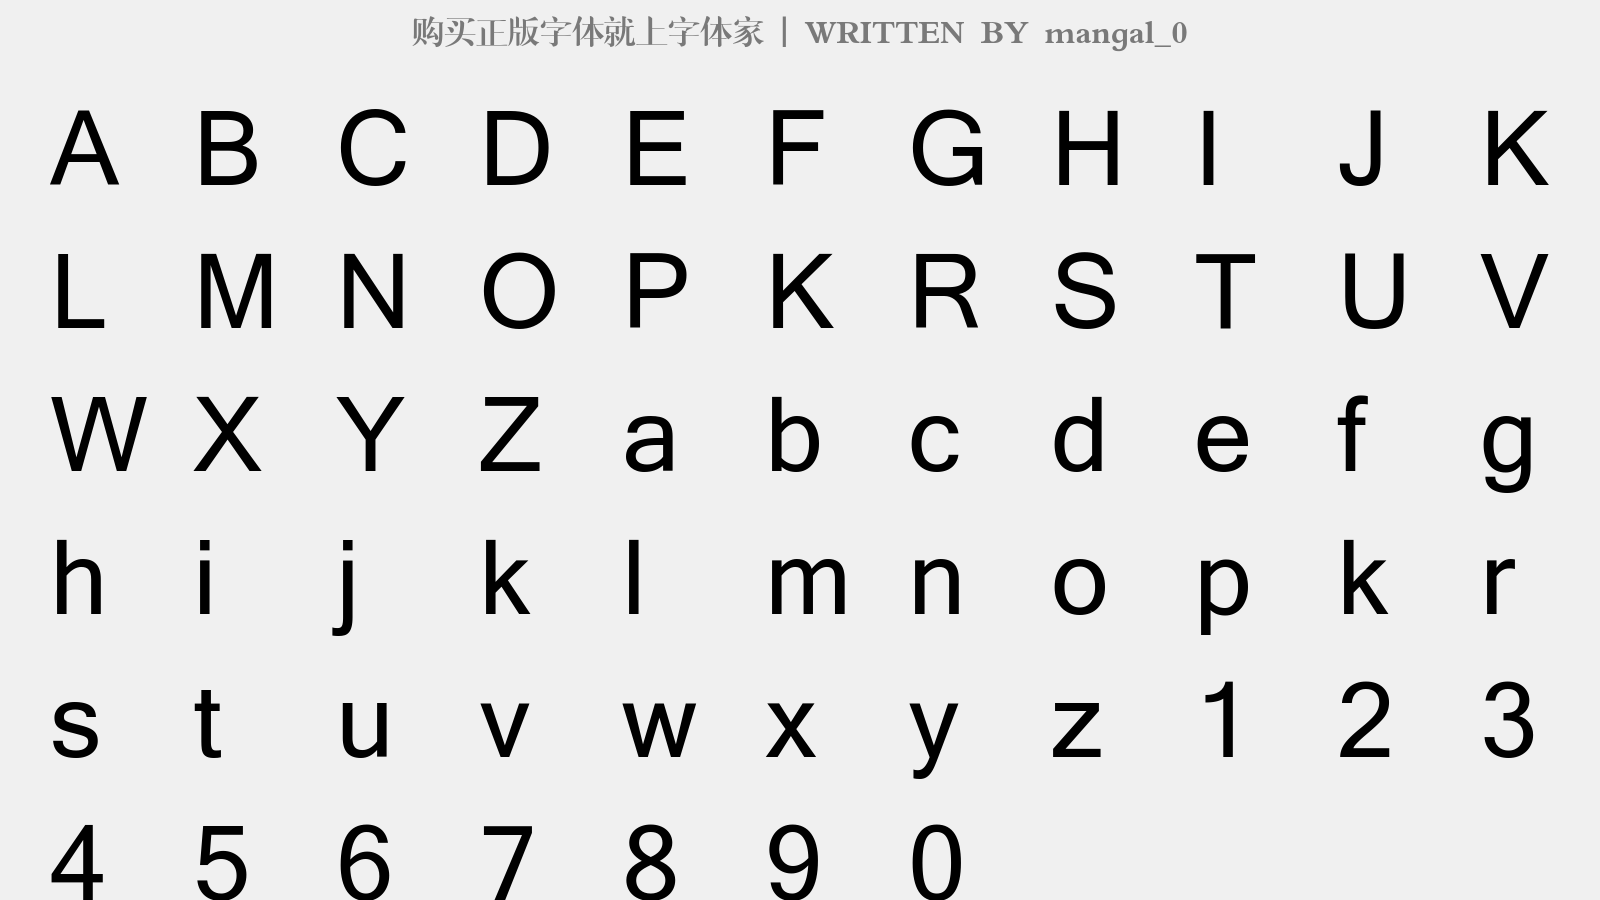 mangal_0 - 大写字母/小写字母/数字